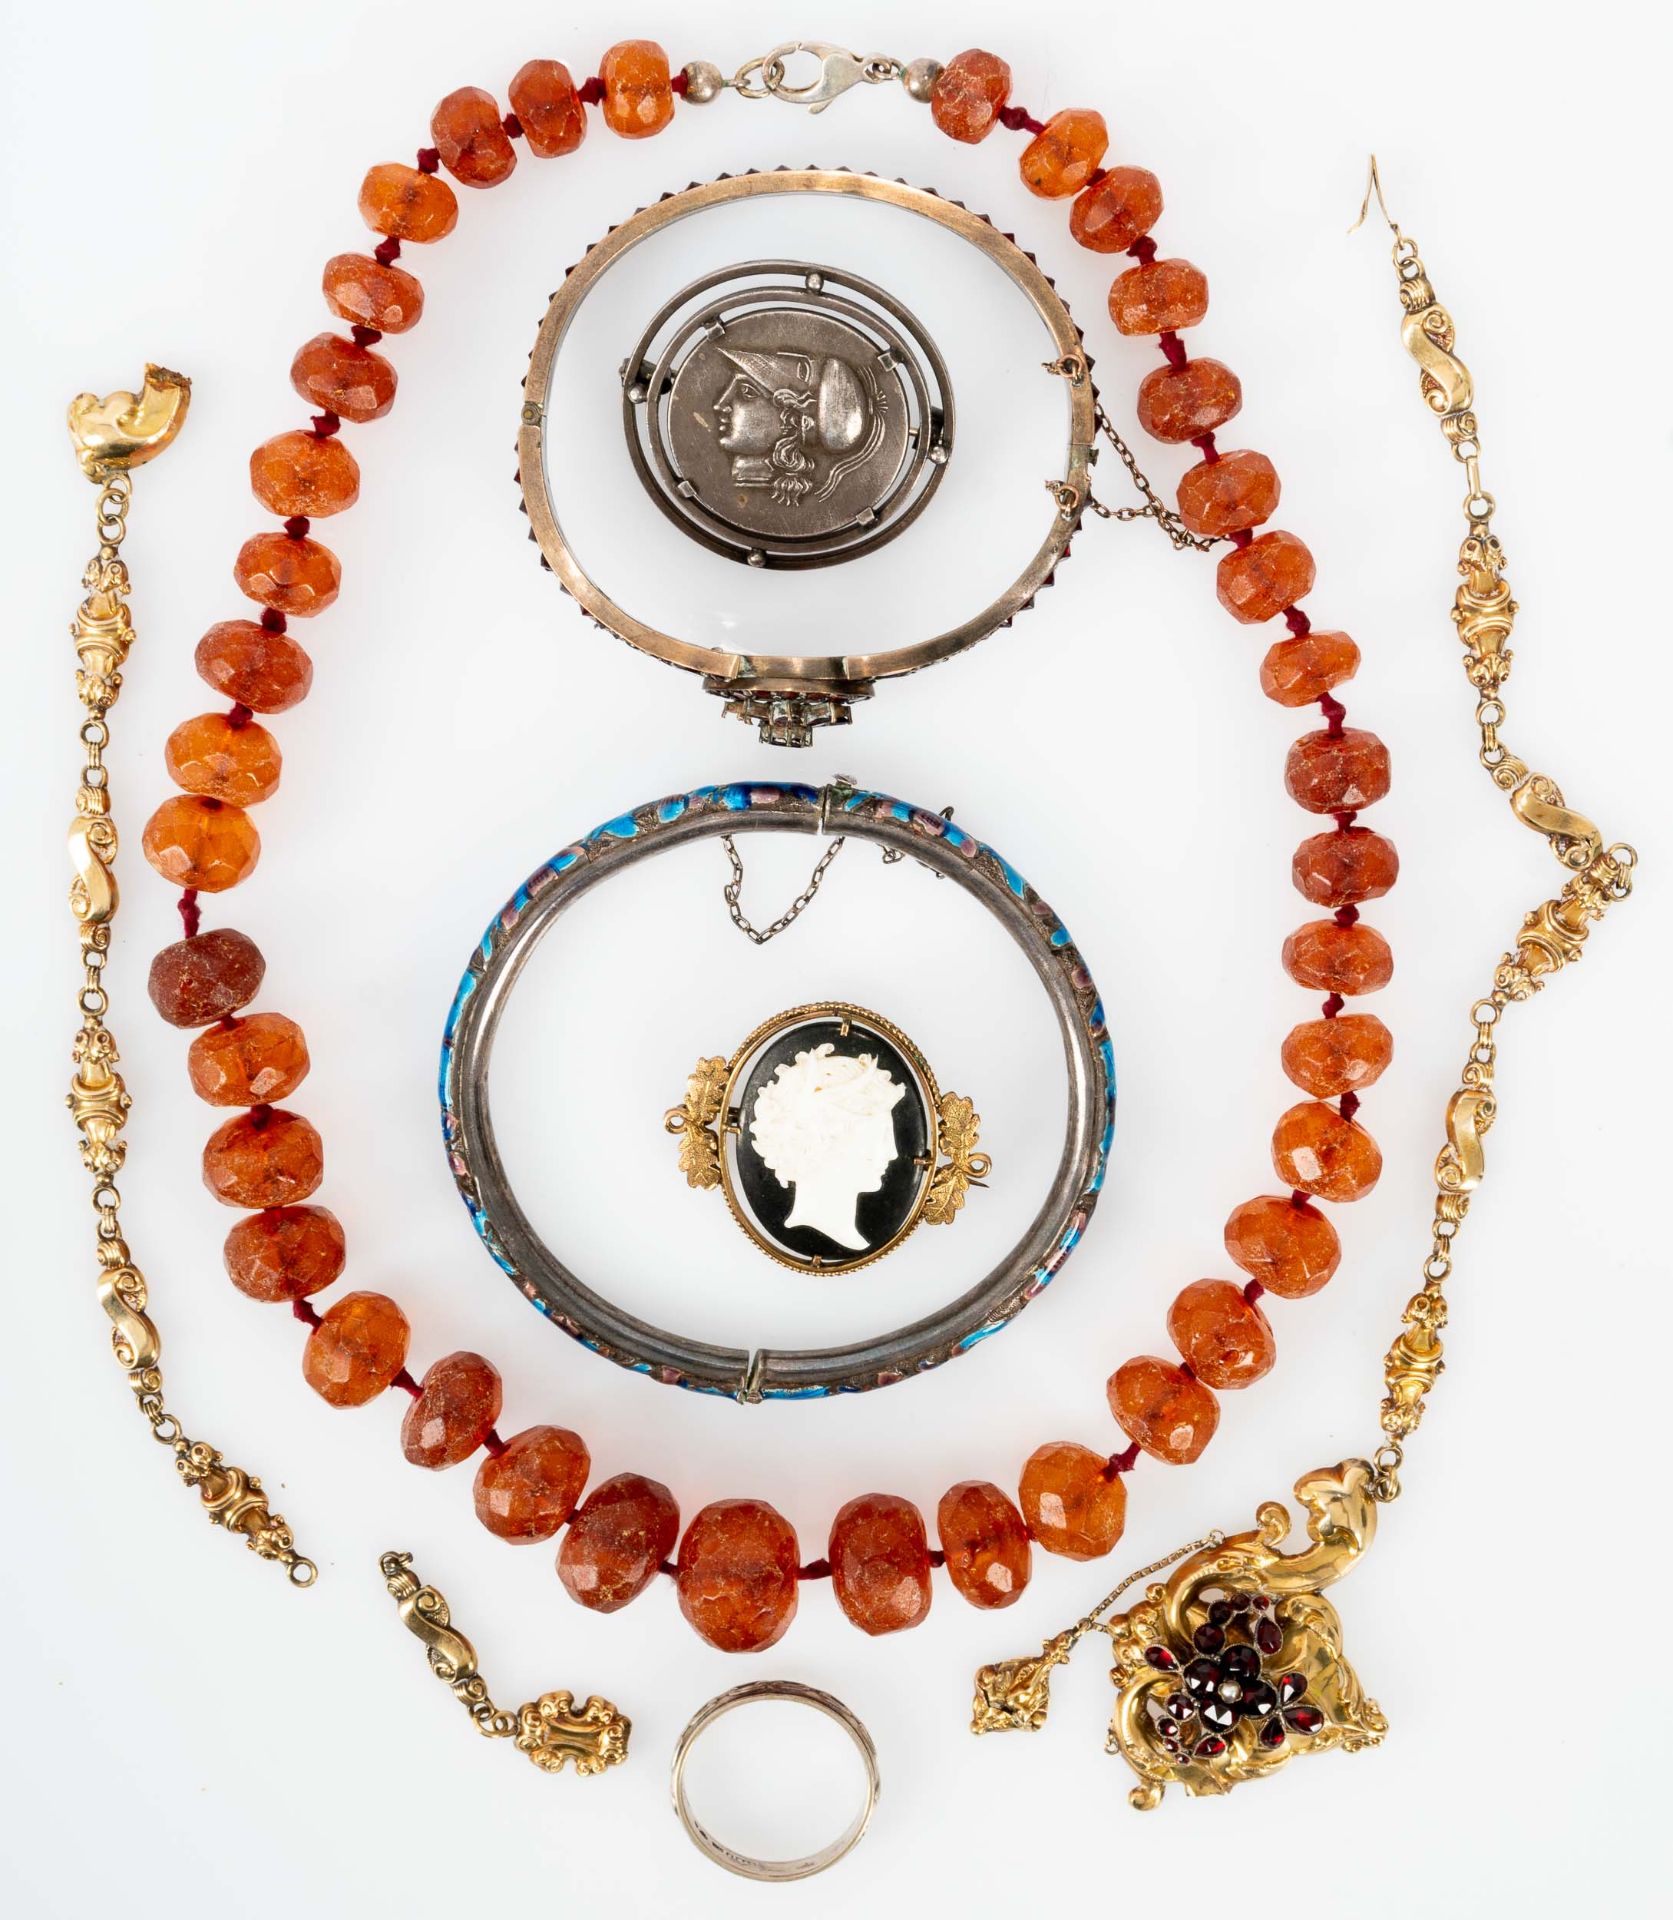 7teiliges Schmuck-Konvolut, bestehend aus 2 Armreifen, 2 Halsketten, 2 Broschen sowie 1 Ring; versc - Image 3 of 3